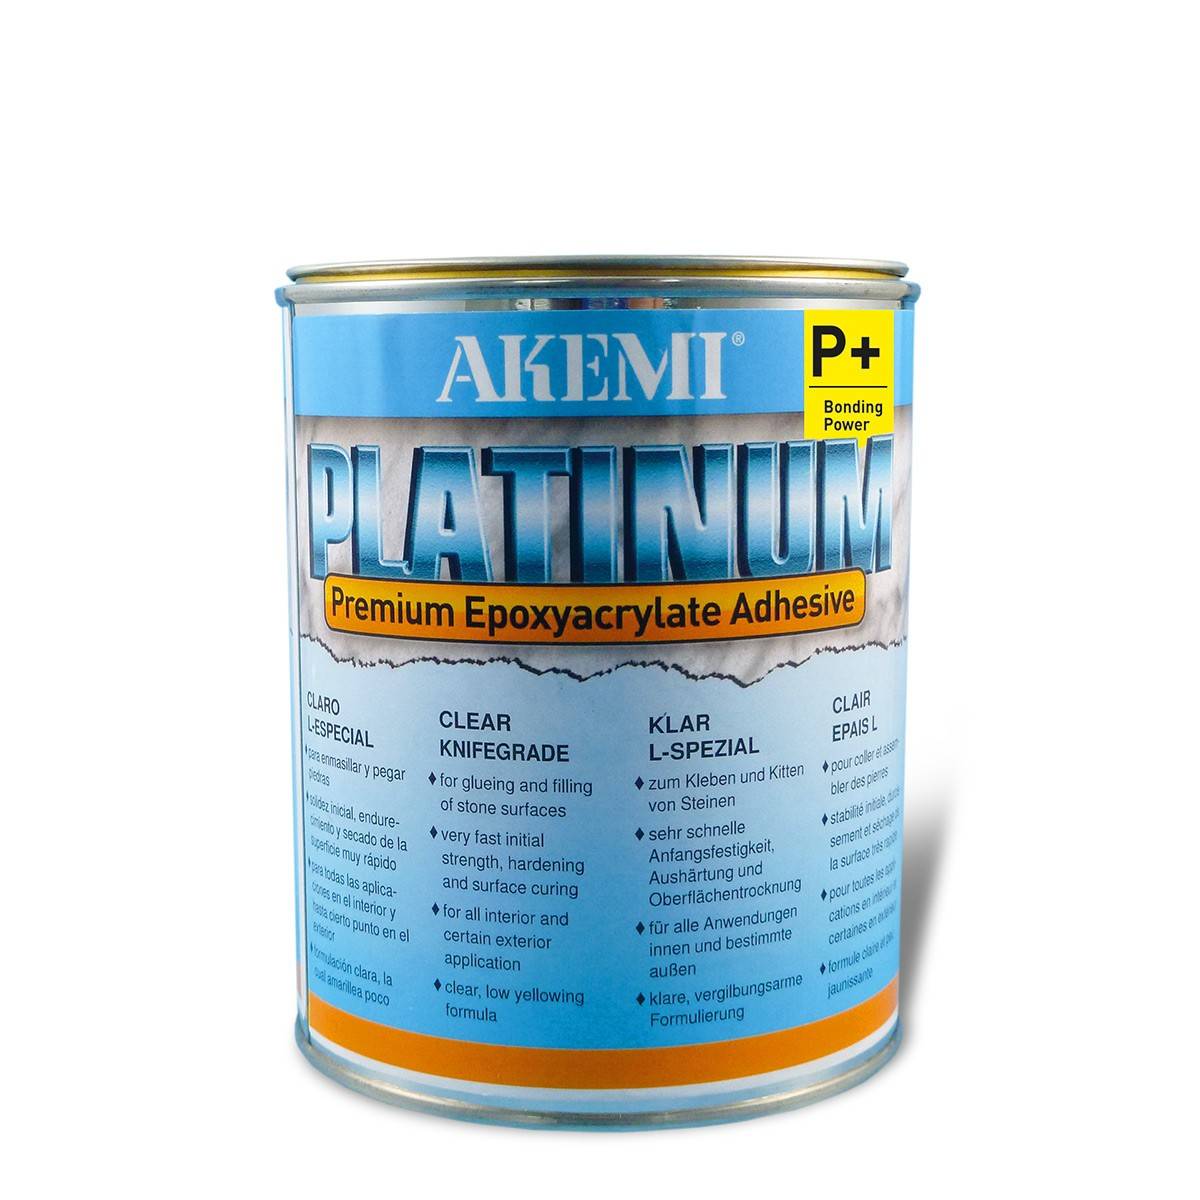 Клей Akemi Platinum epoxyacrylate желеобразный, прозрачно-молочный. Эпоксиакрилатный клей Platinum фирмы AKEMI